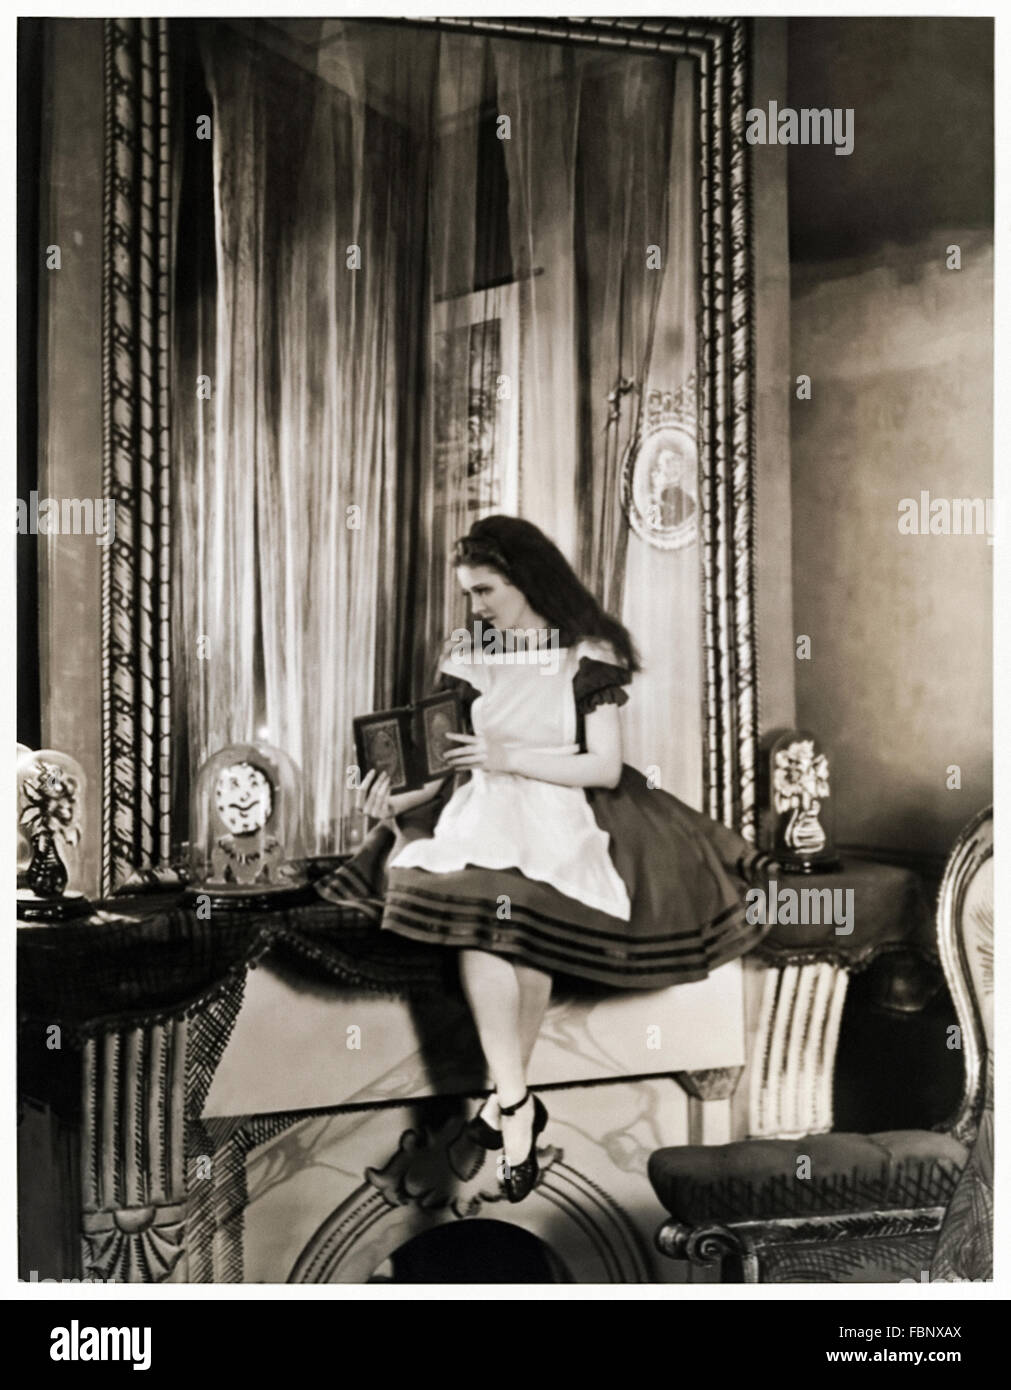 Alice además el Looking Glass, fotografía publicitaria para el 1932 etapa de adaptación de "Alicia en el país de las Maravillas" de Lewis Carroll (1832-1898) protagonizada por Josephine Hutchinson (1903-1998) como Alice. Foto de stock